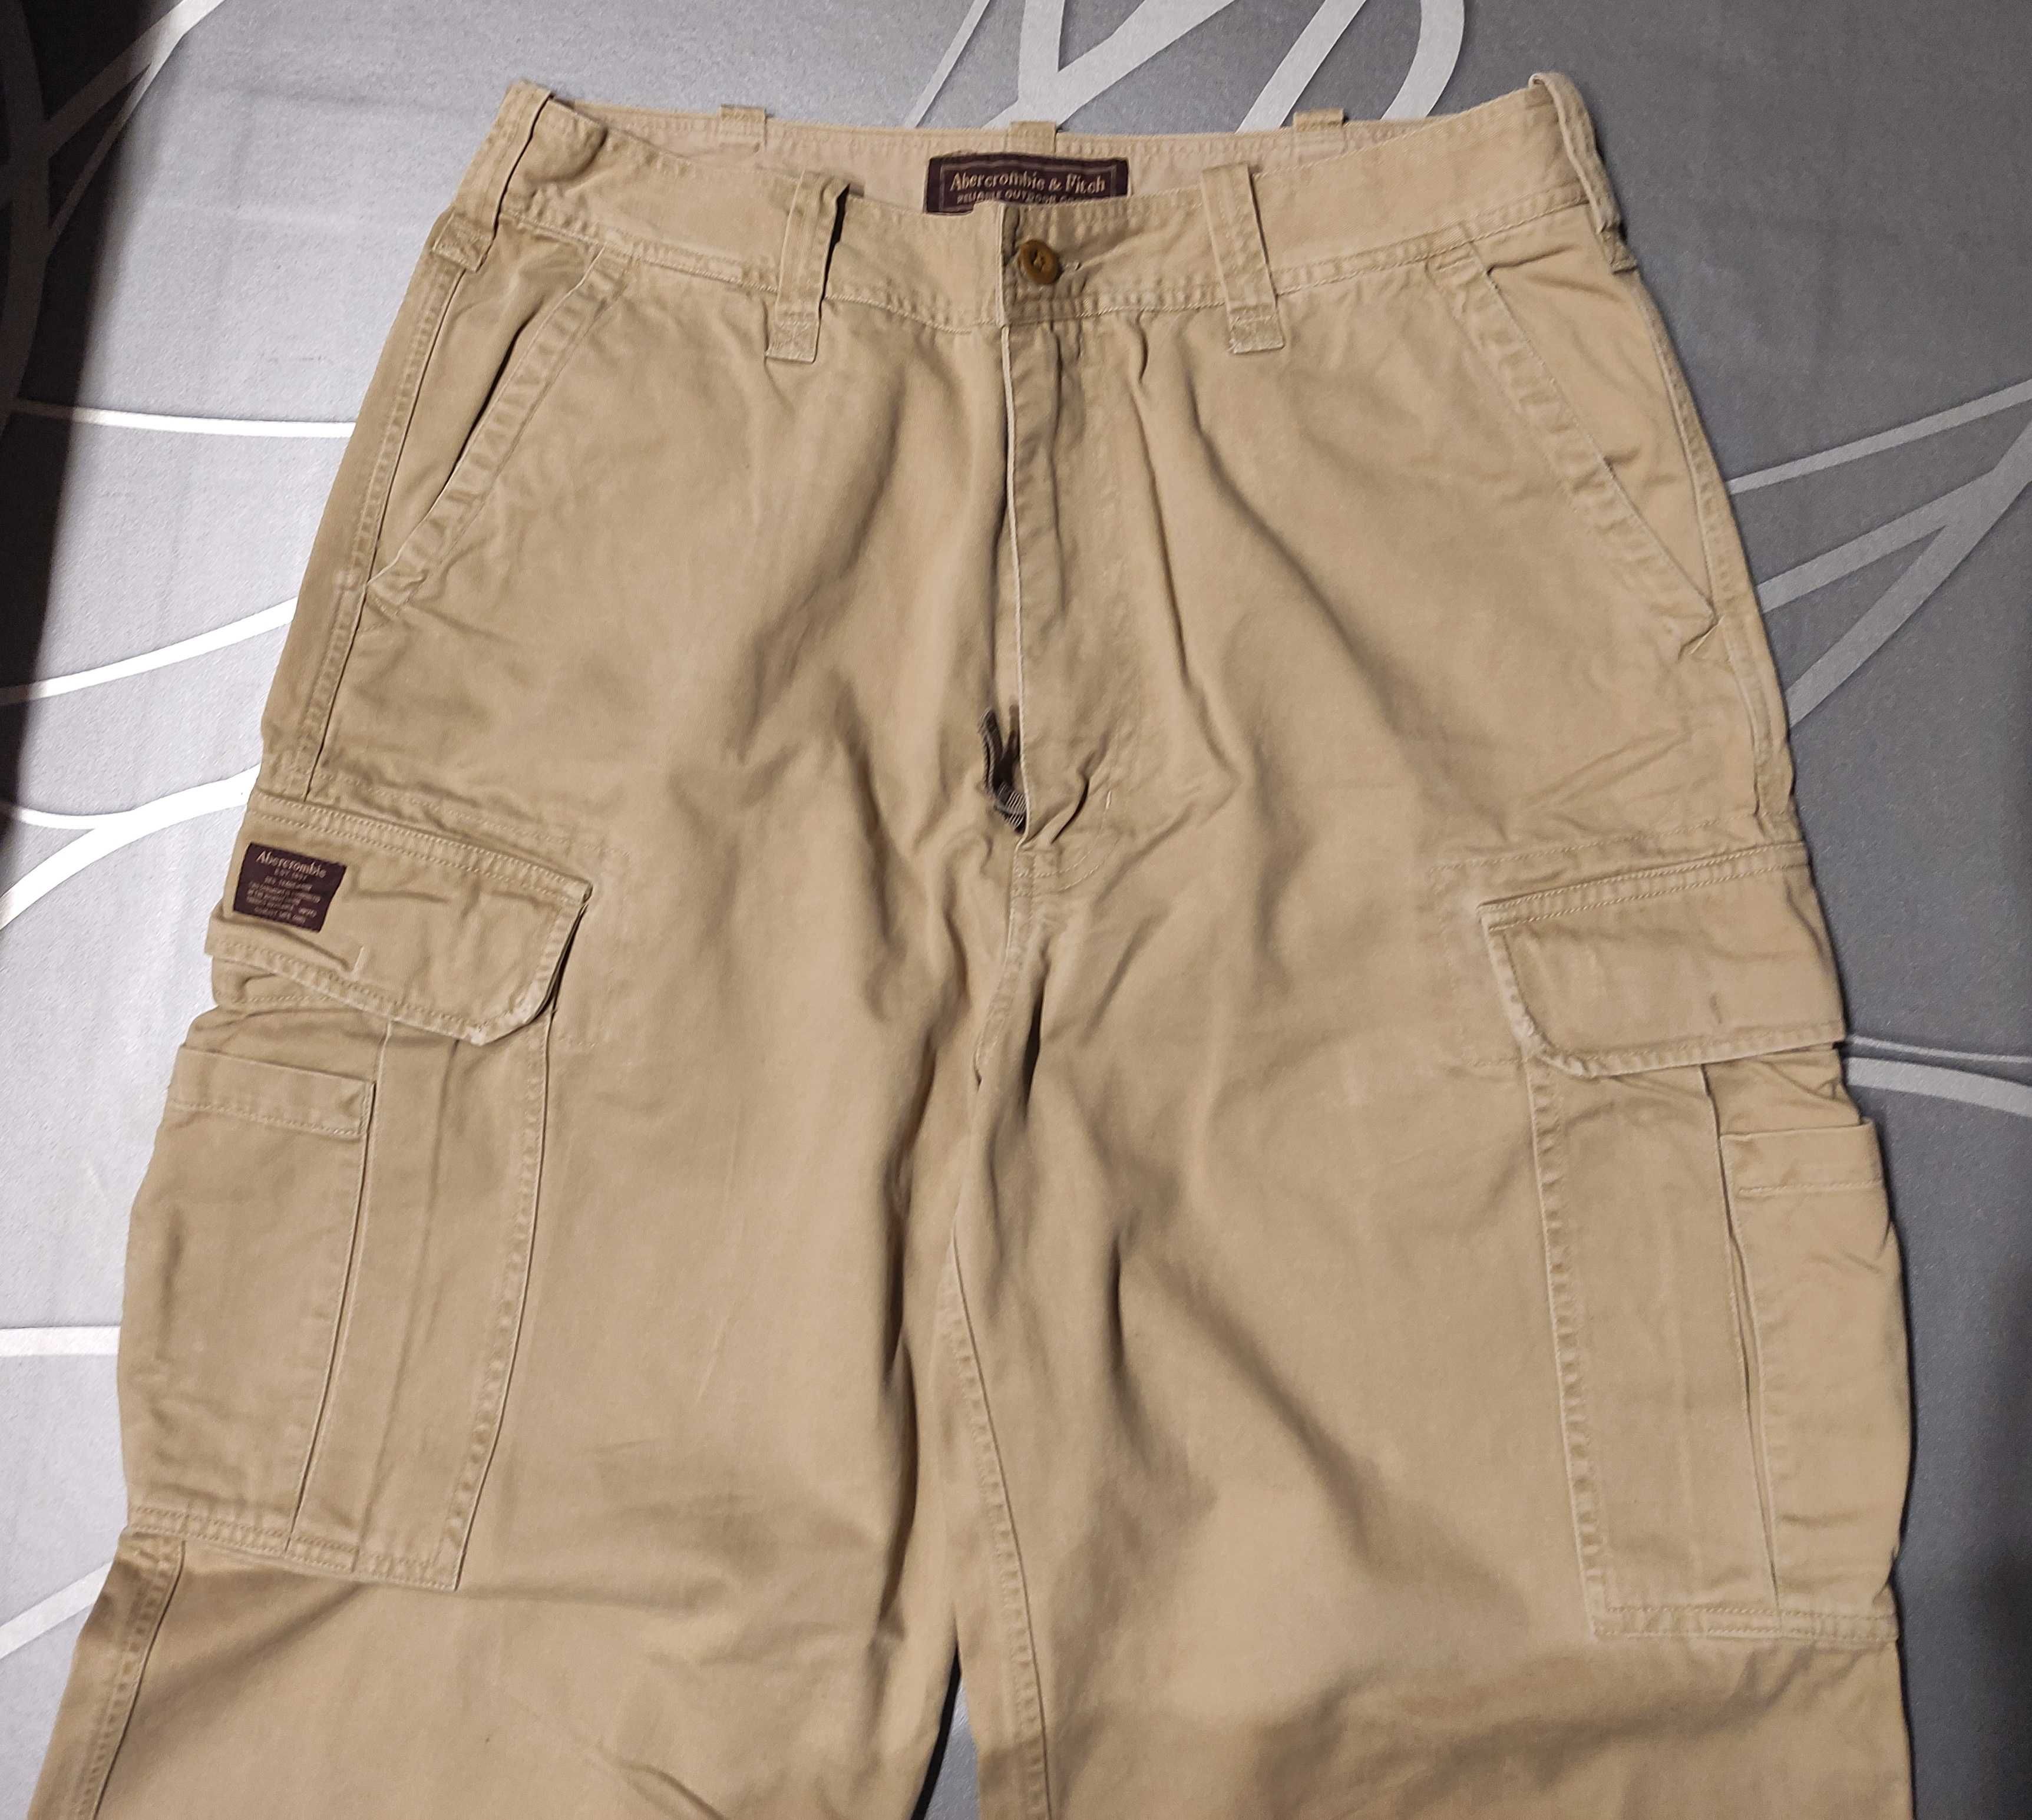 Spodnie męskie Abercrombie & Fitch 34L bojówki